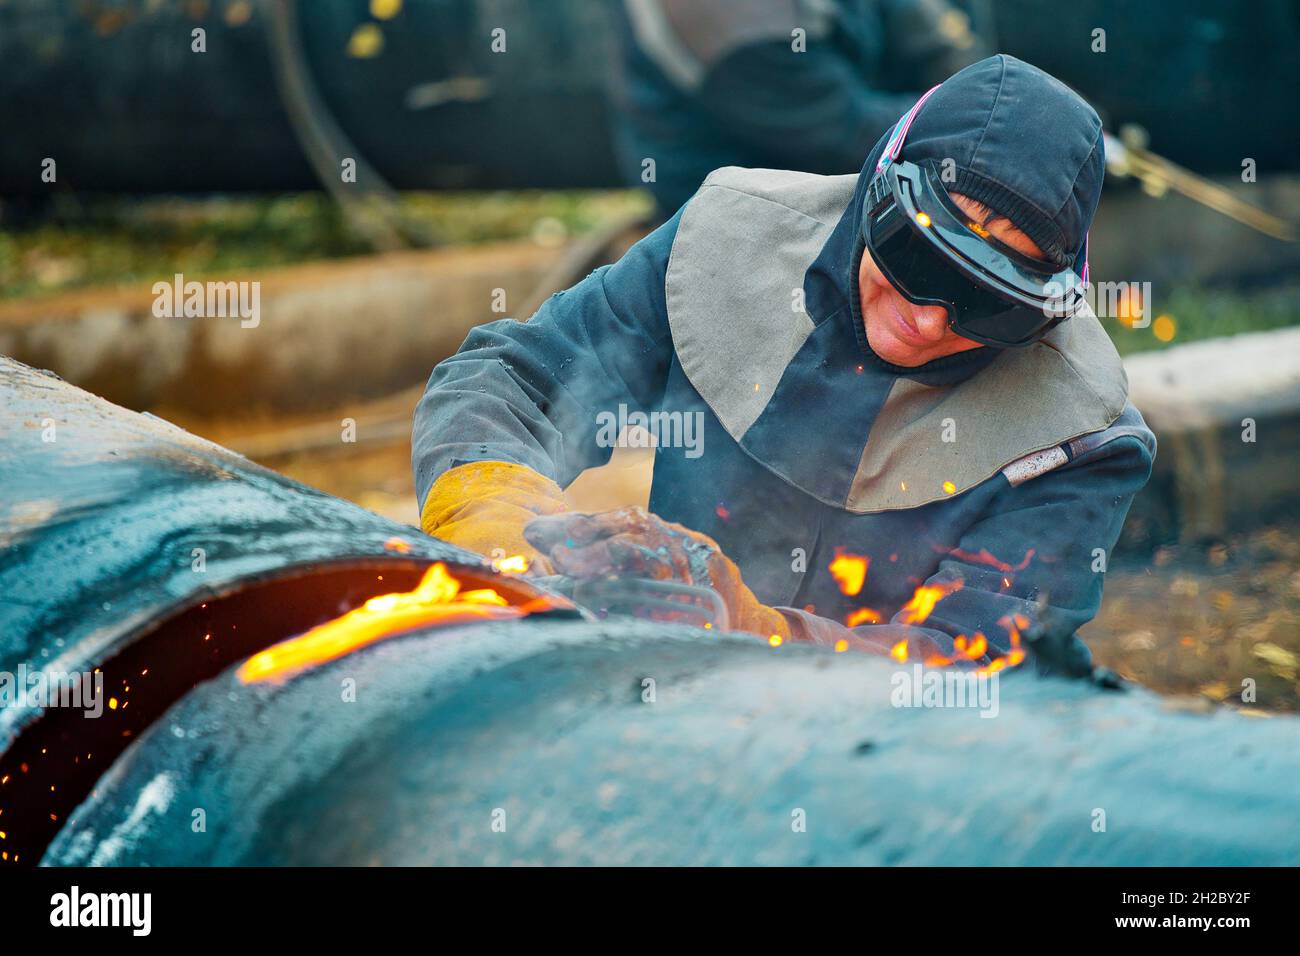 La saldatrice taglia grandi tubi metallici con saldatura in ocetilene. Un lavoratore in strada taglia tubi di grande diametro durante il giorno e scintille e fuoco volare. Foto Stock